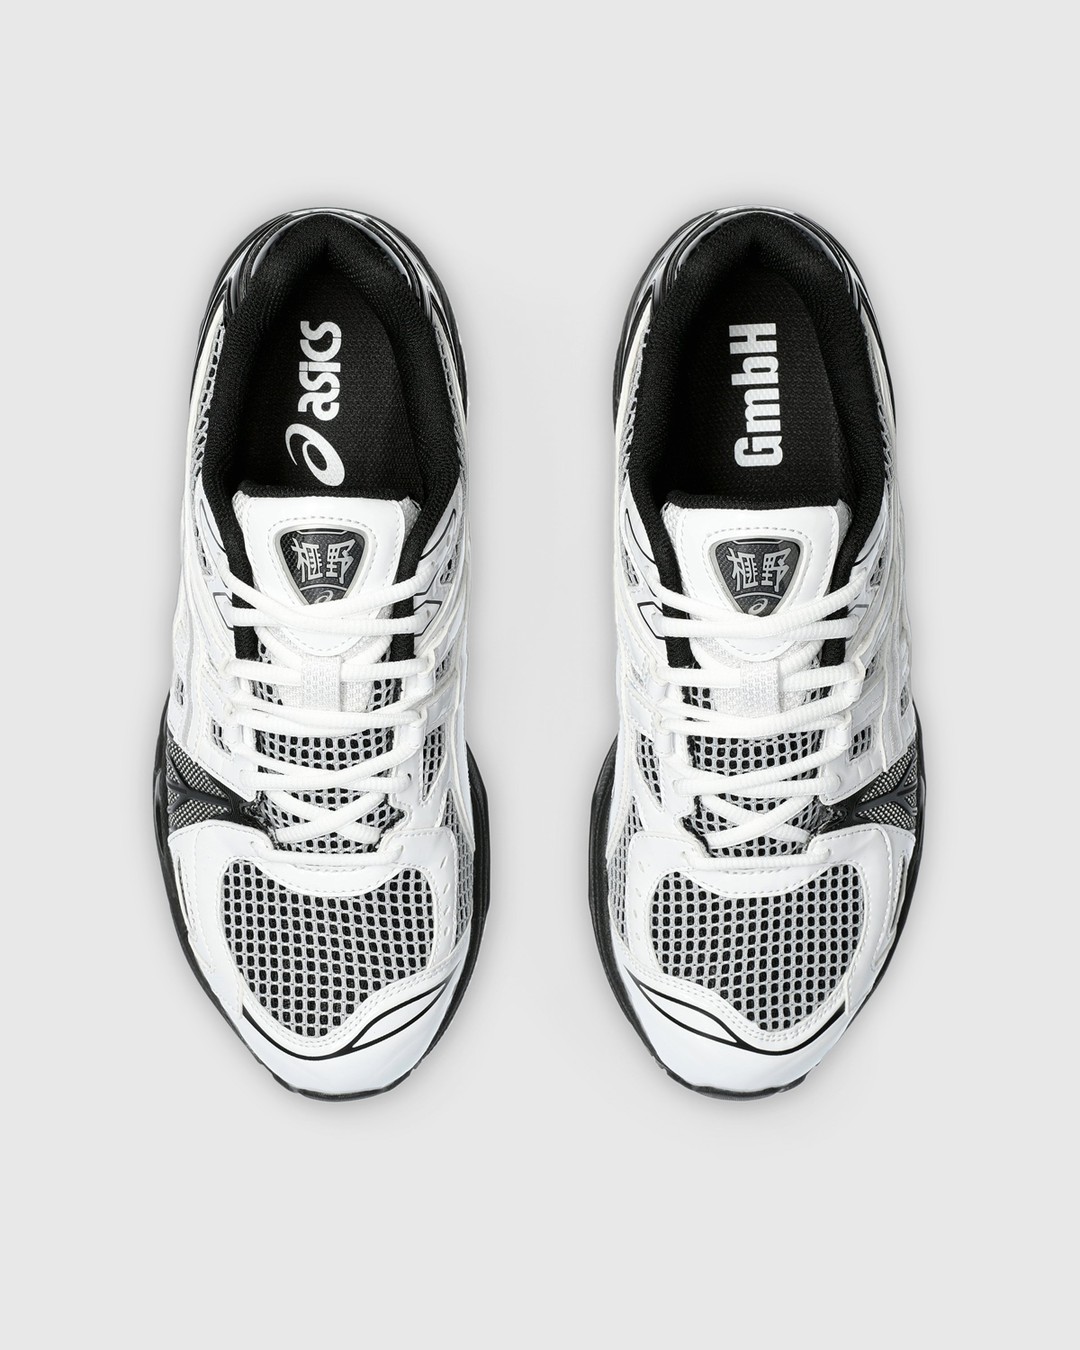 asics x GmbH – GEL-KAYANO LEGACY White/Black - Sneakers - Multi - Image 4